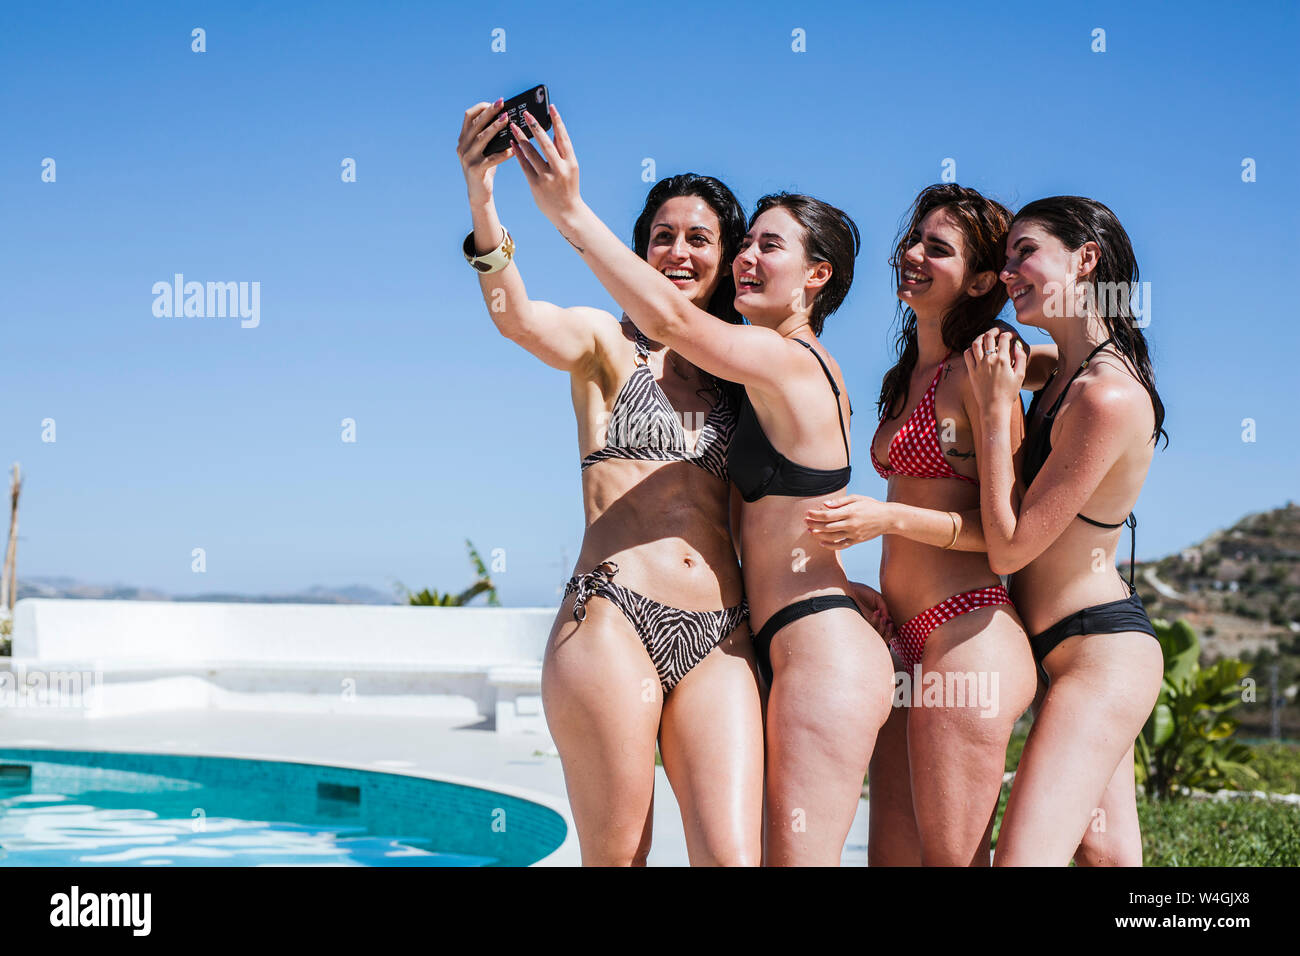 Las mujeres jóvenes disfrutando del verano en la piscina, tomando un selfie Foto de stock